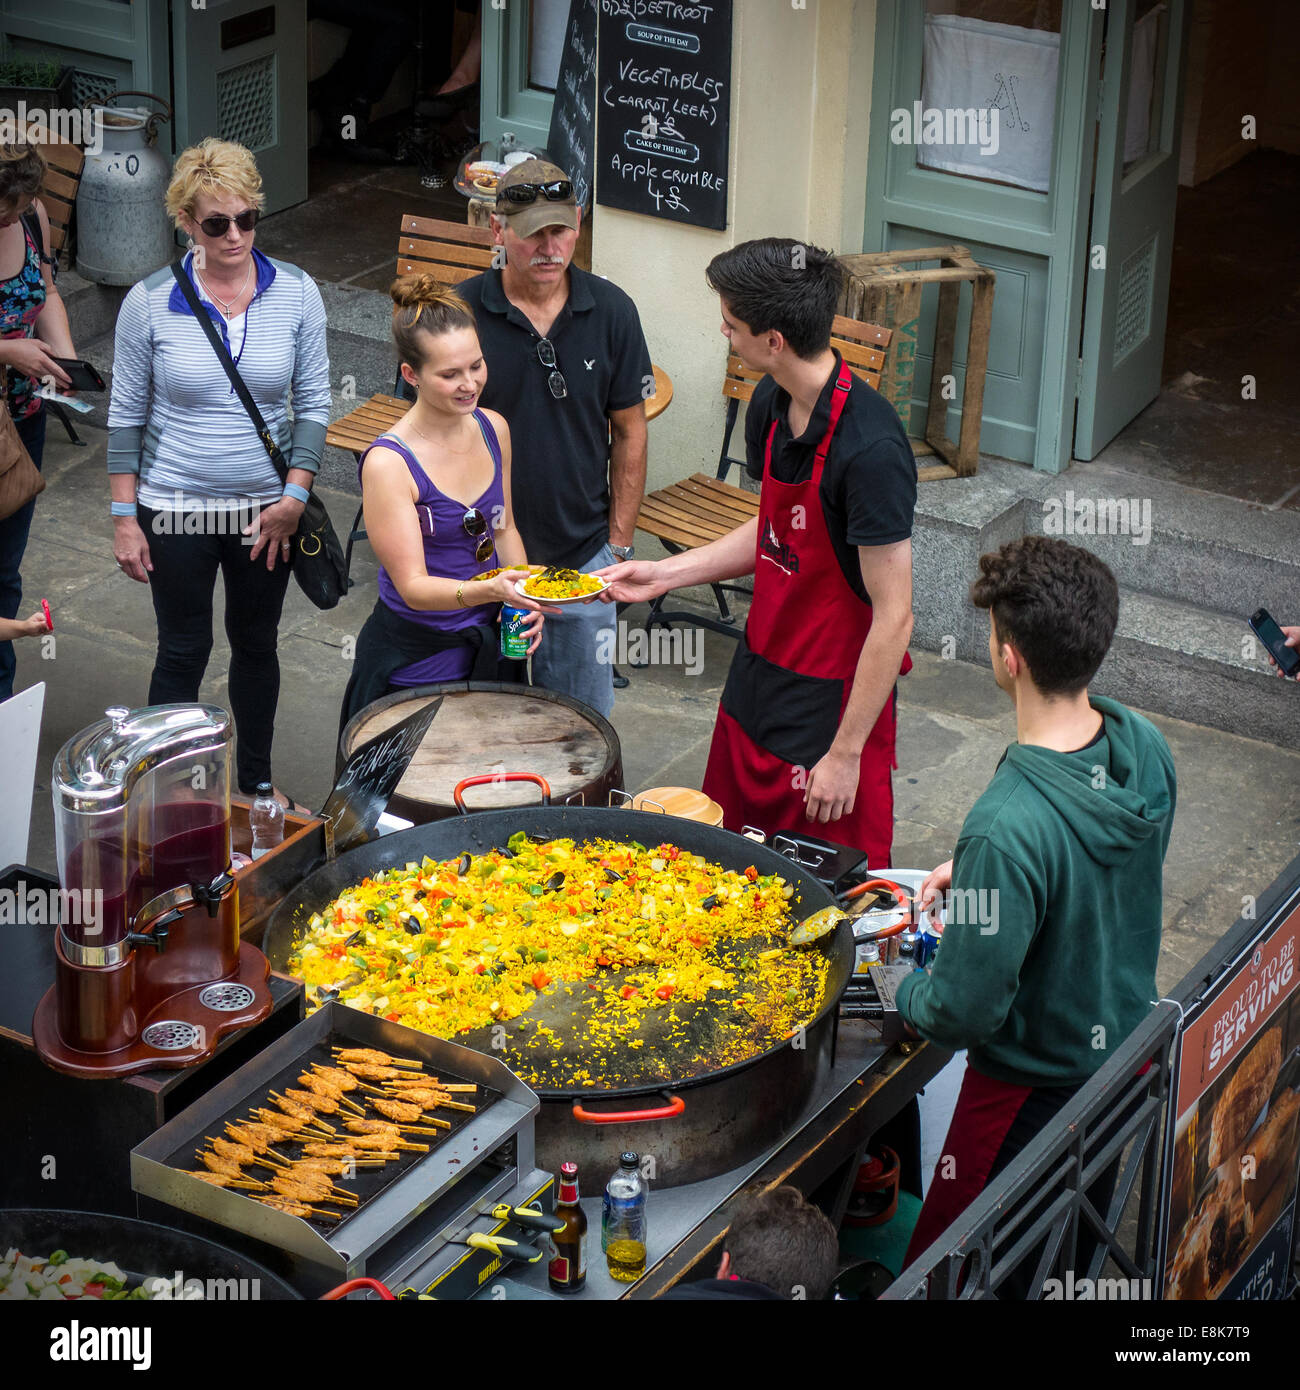 Servant des plats faits maison Covent Garden Market Londres Paella de légumes Banque D'Images